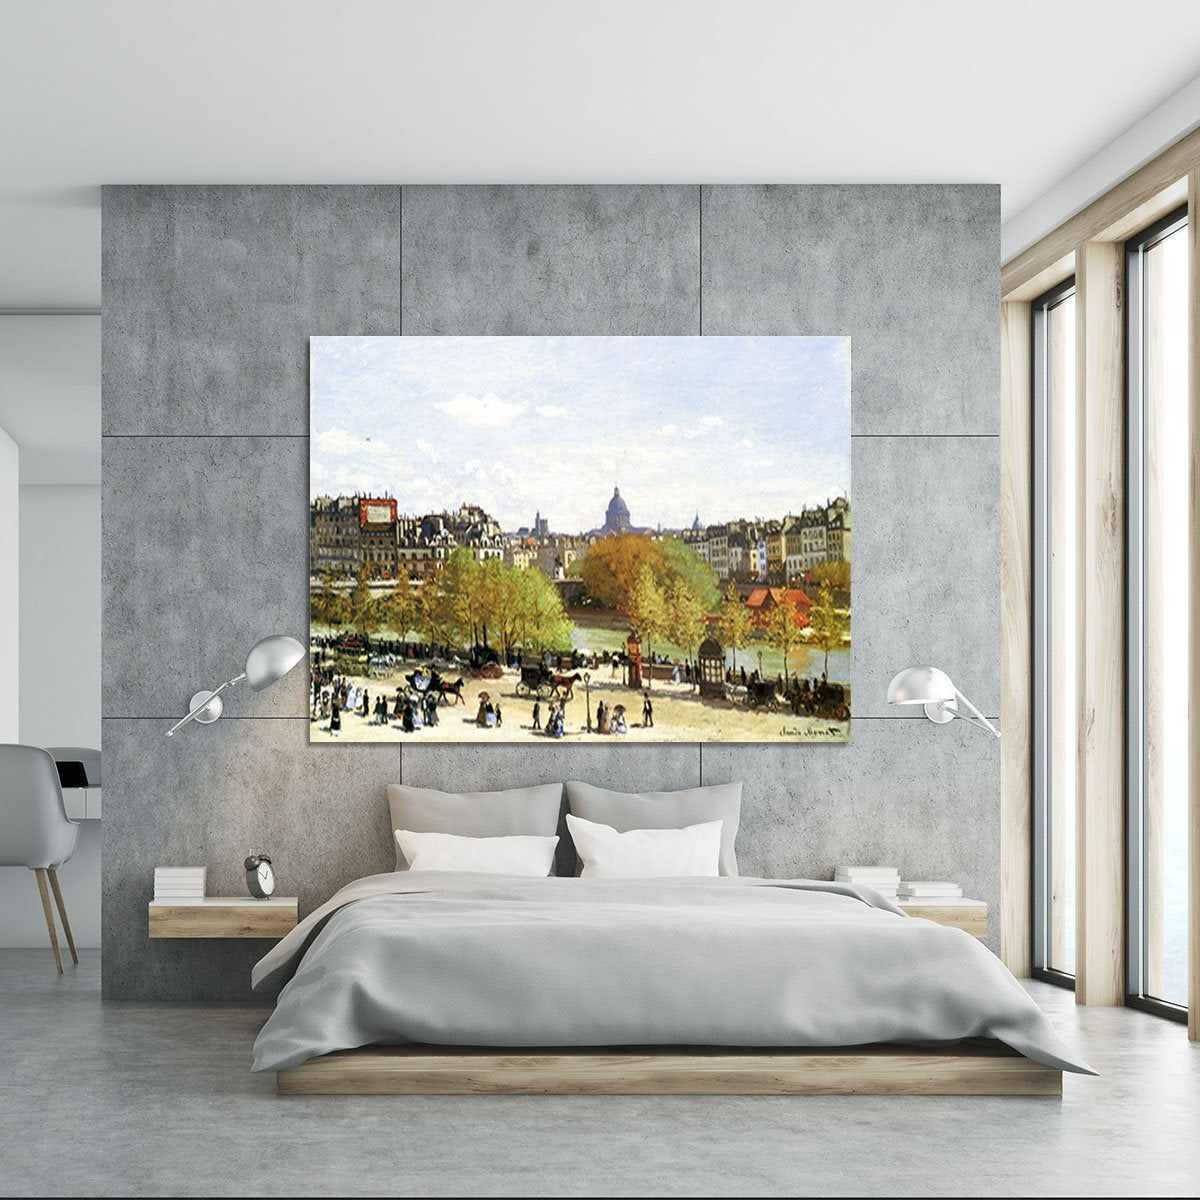 Le quai du Louvre by Monet Canvas Print or Poster